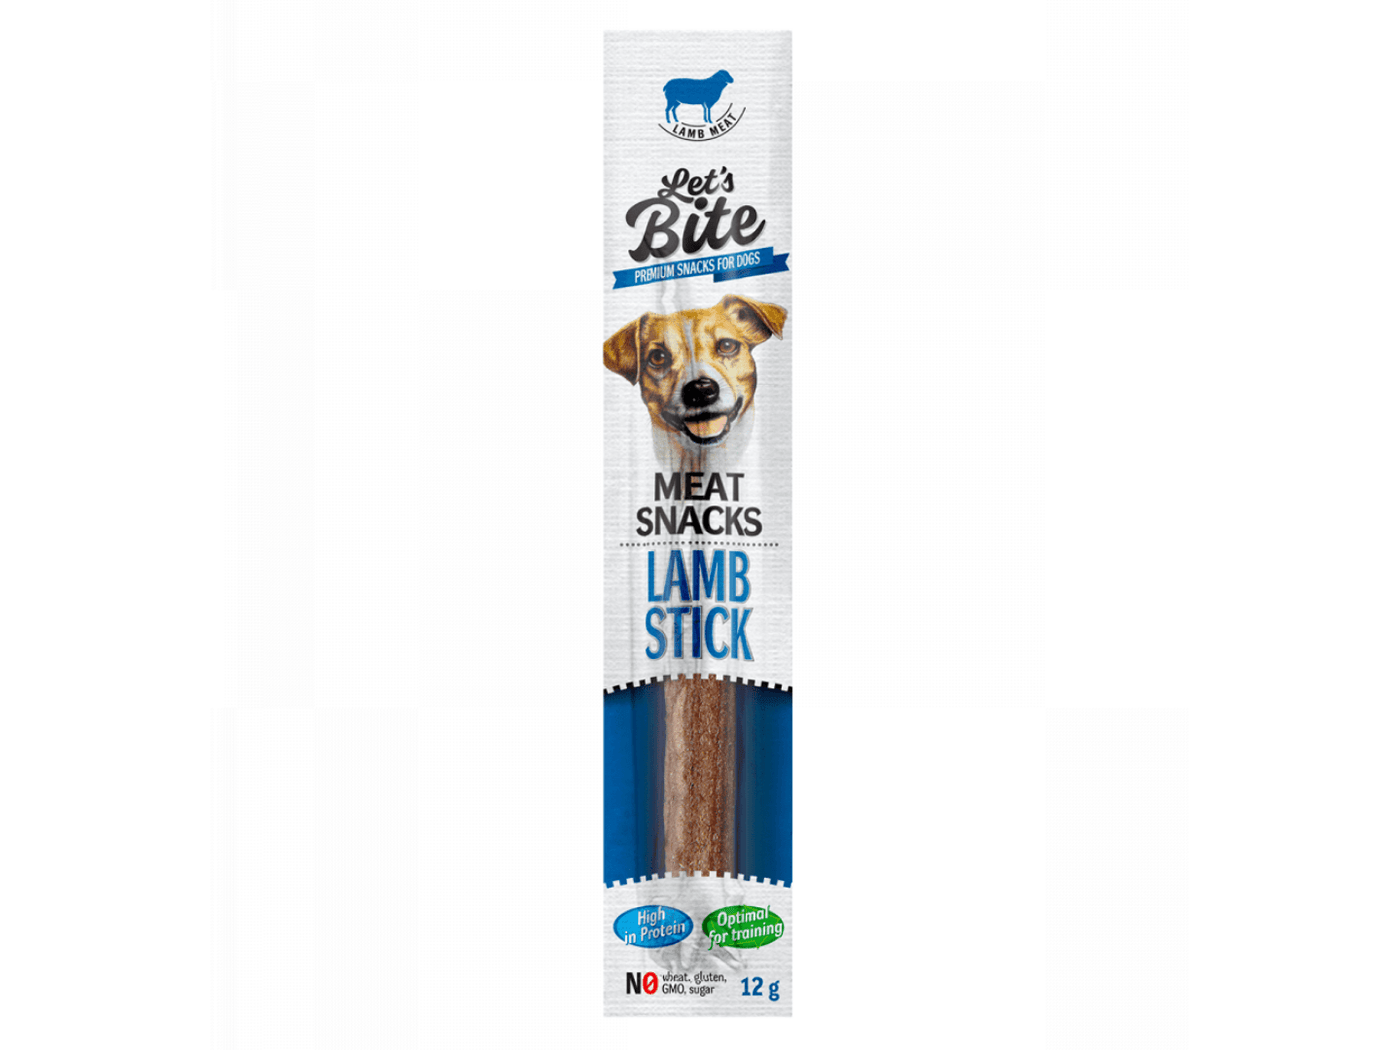 Let’s Bite Meat Snacks. Lamb stick, 12 g